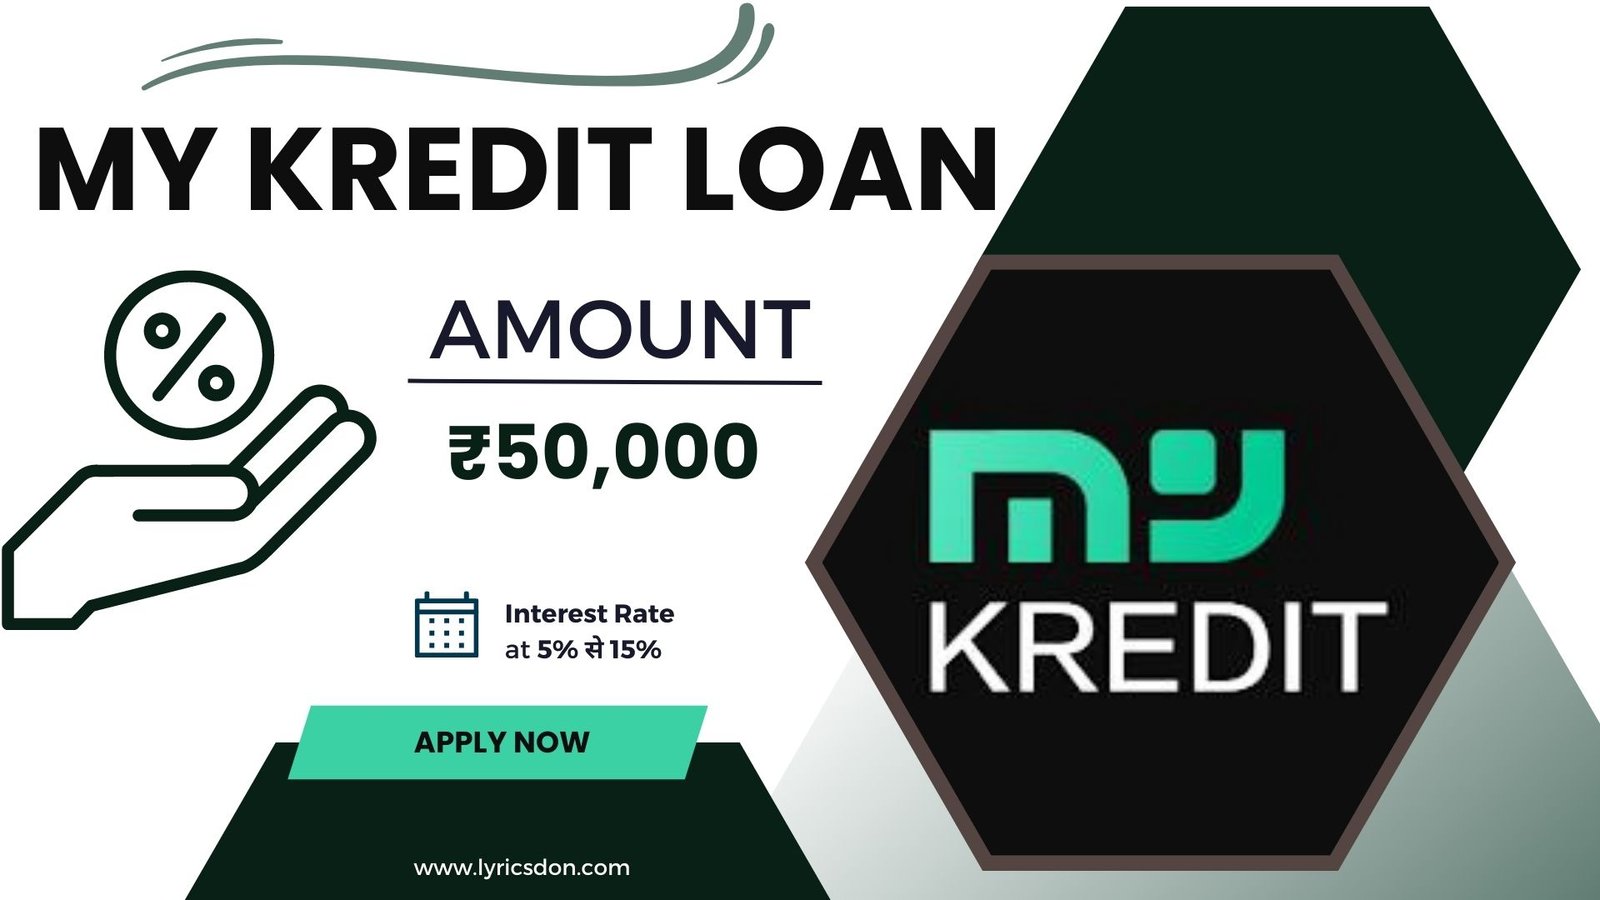 My Kredit Loan App Loan Amount